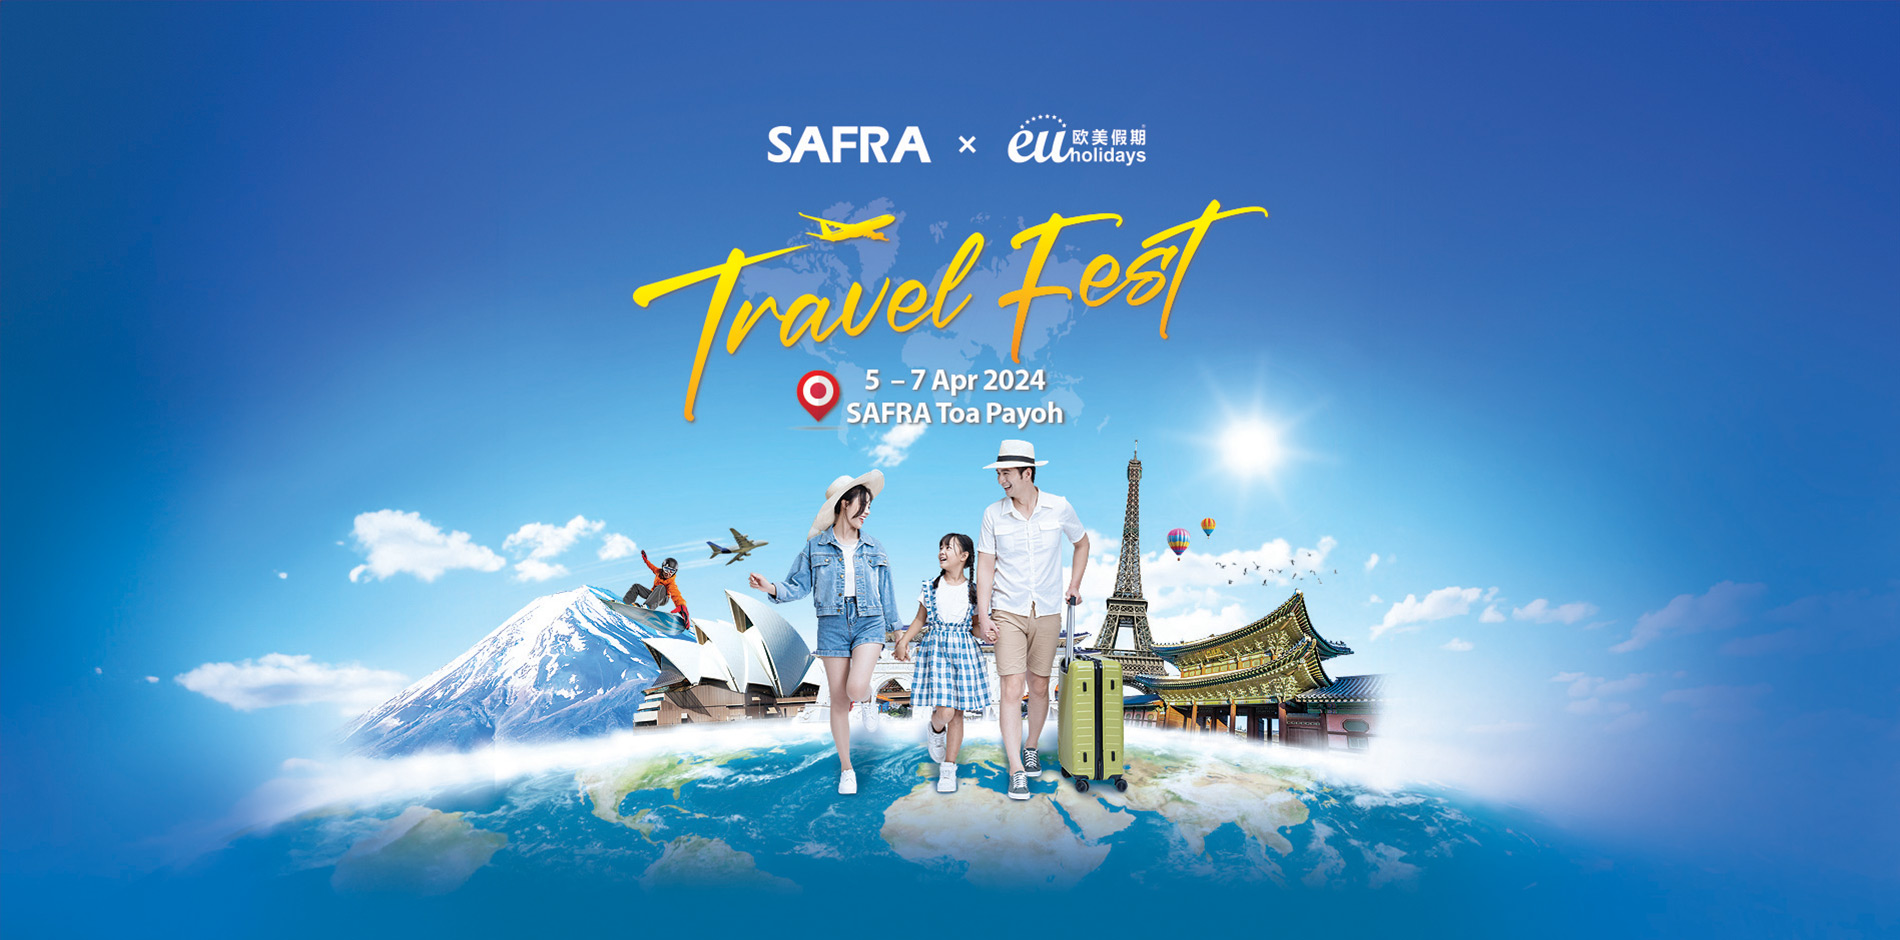 SAFRA-EU-Holidays-Travel-Fest-2024-Hero-Banner